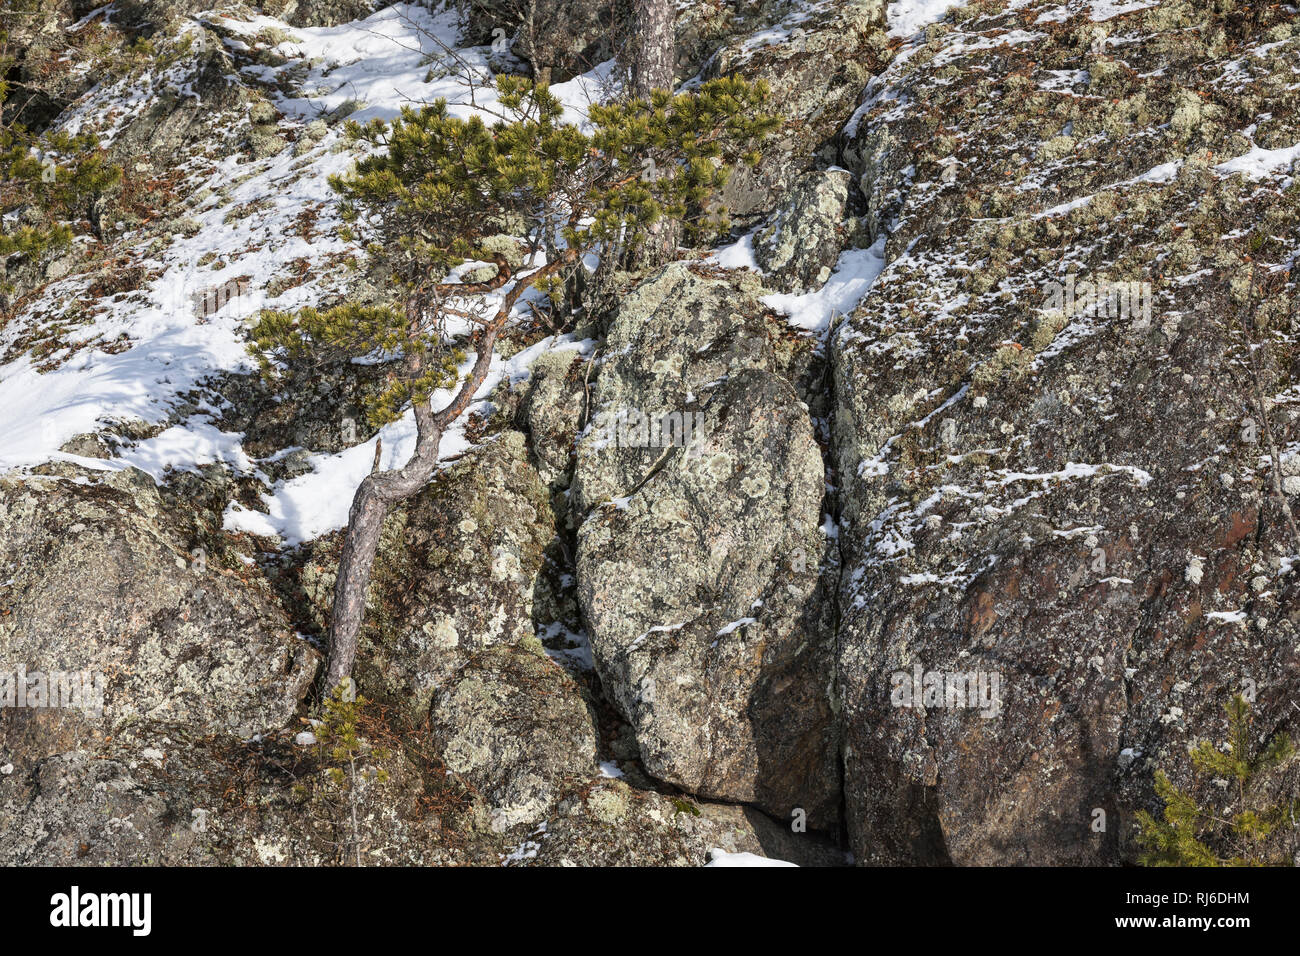 Finnland, einzelne Kiefer auf Felsen im Winter Banque D'Images